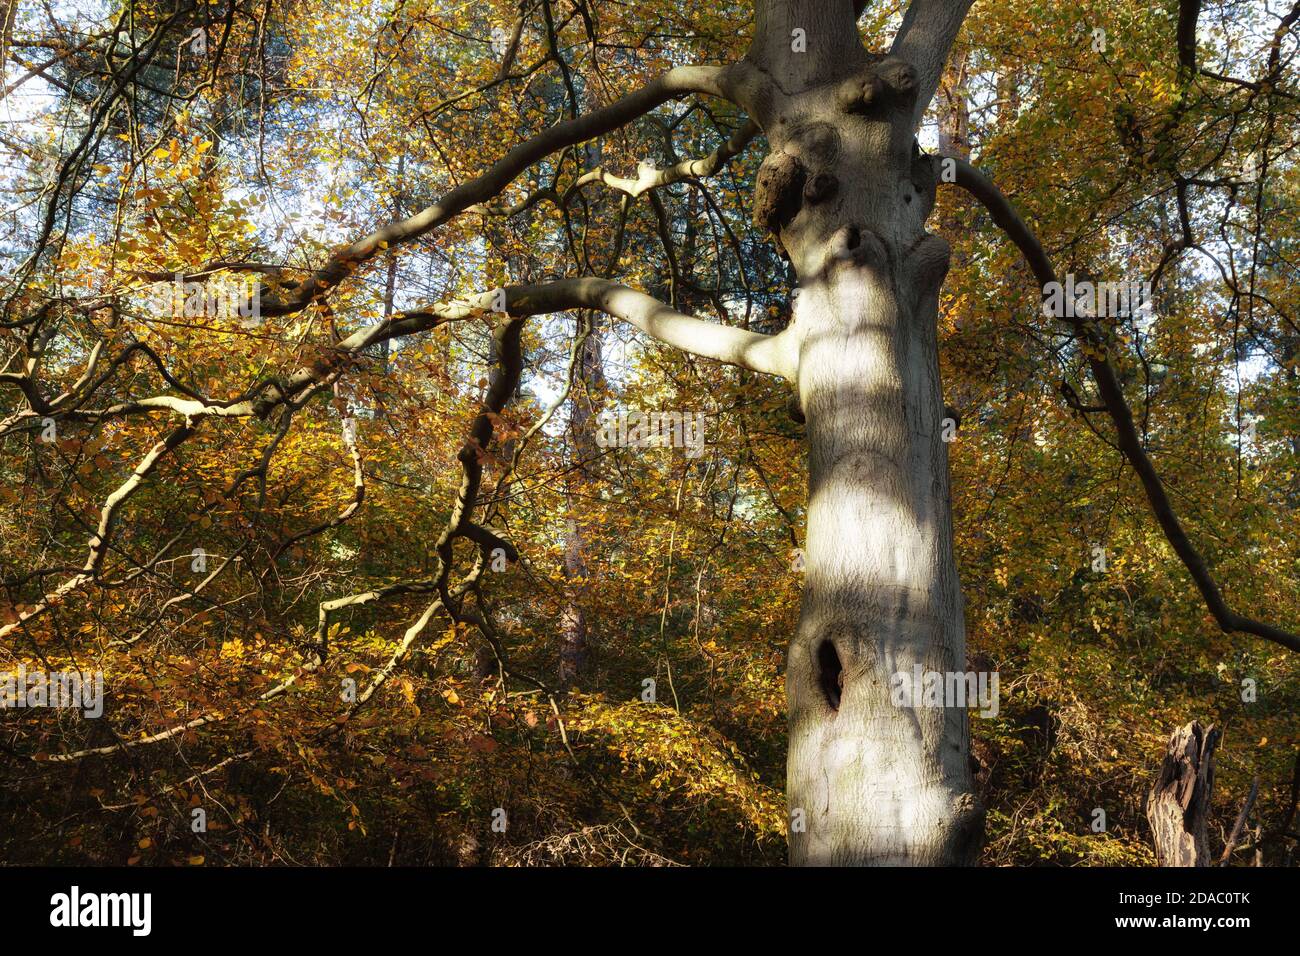 Oak Forest UK; Oak Trees in otoño; The Kings Forest, Suffolk England UK Foto de stock